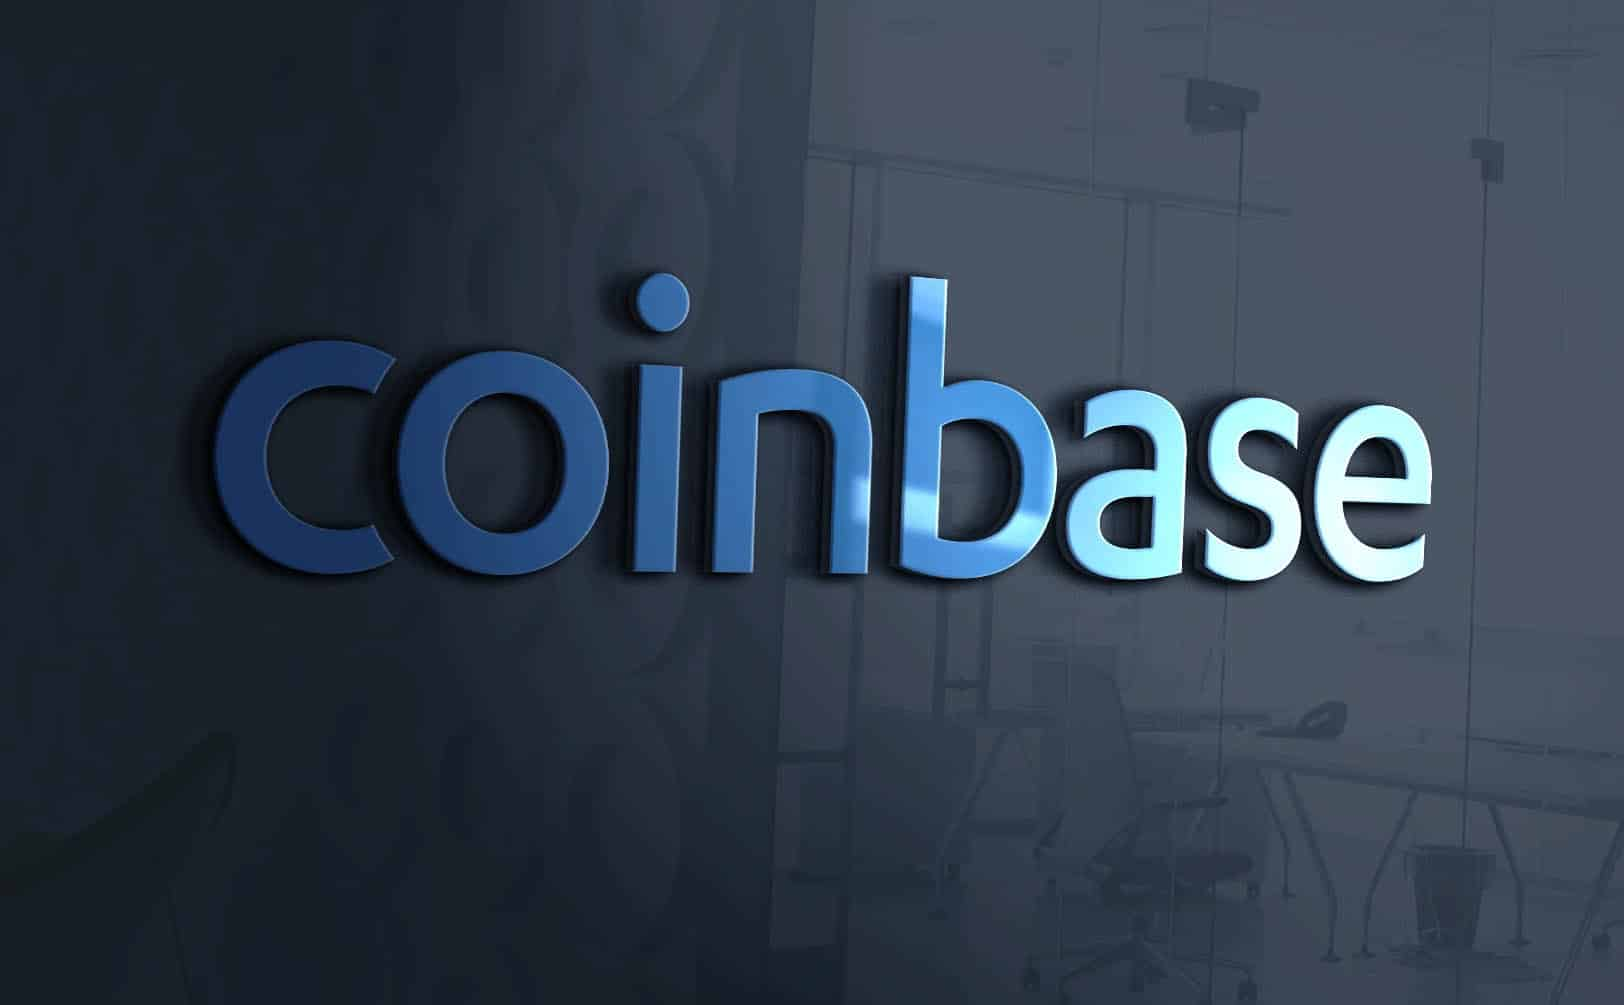 Coinbase, dünyanın önde gelen kripto para borsalarından biridir ve kullanıcılara kripto para birimleri alımı, satımı, takası ve saklaması konularında hizmet verir.